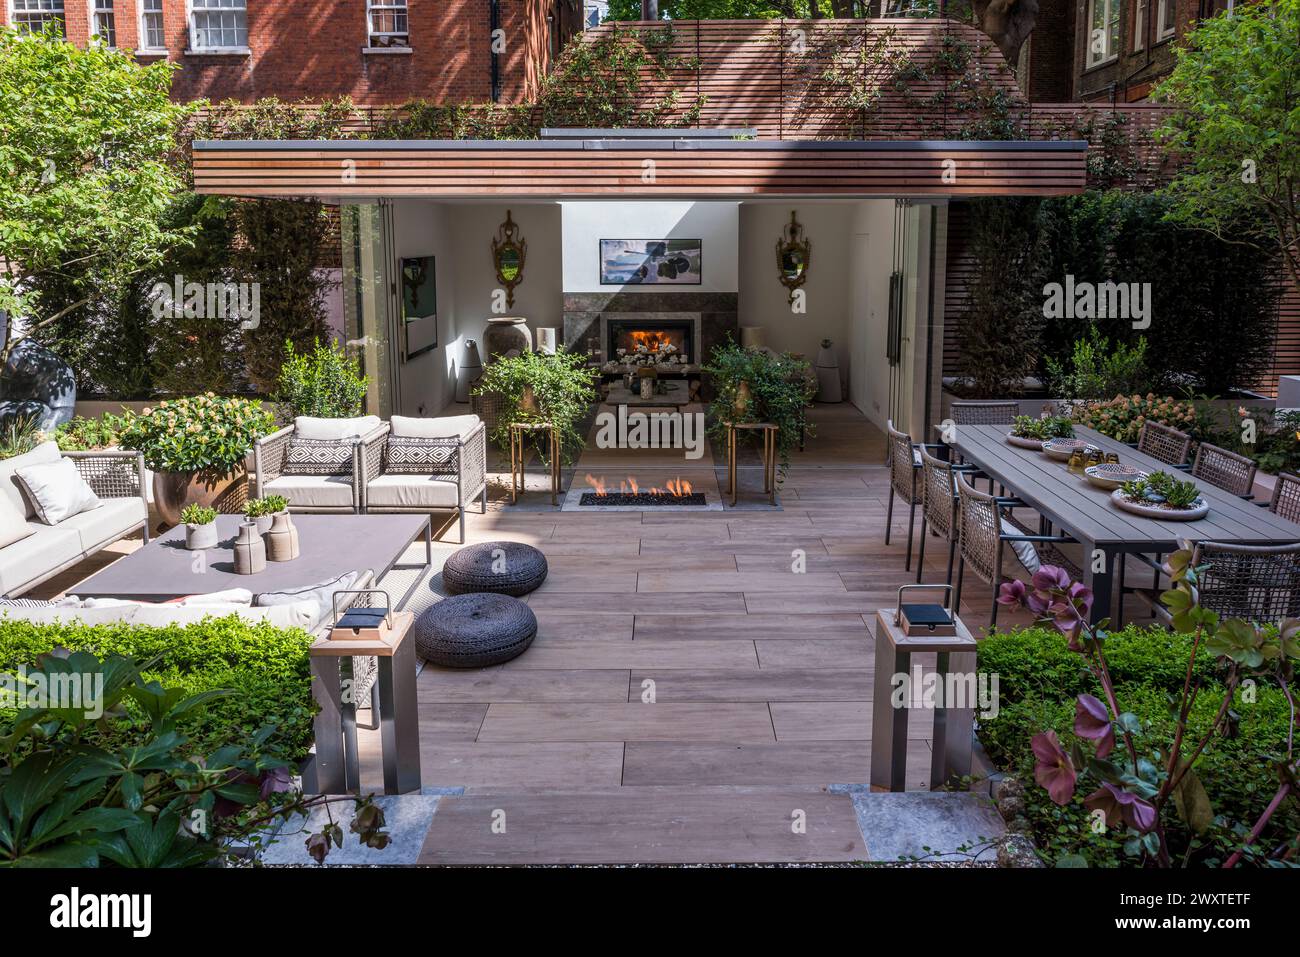 Posti a sedere in terrazza e caminetto della moderna casa cittadina a Chelsea, West London, Regno Unito Foto Stock